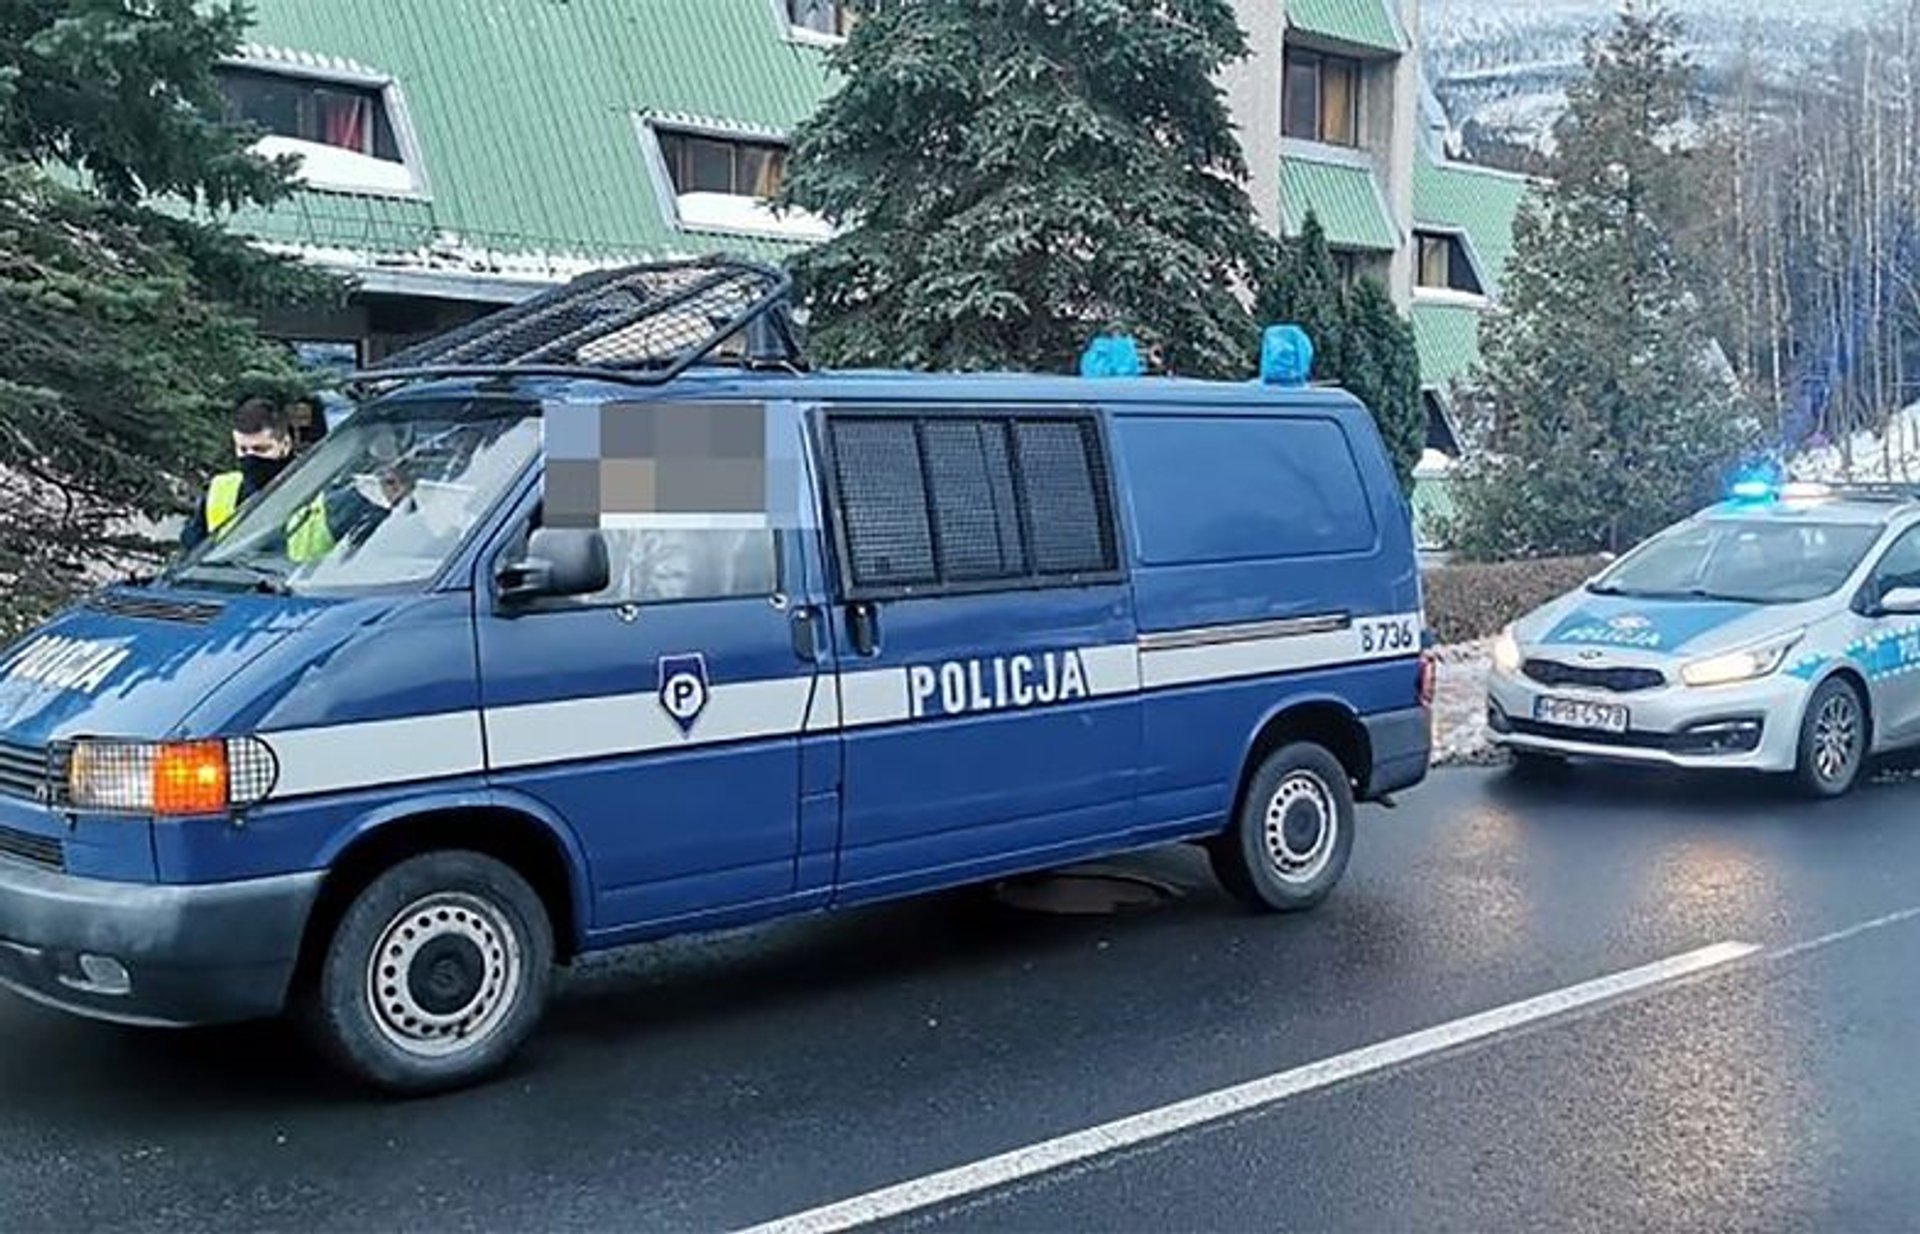 Policja Karpacz